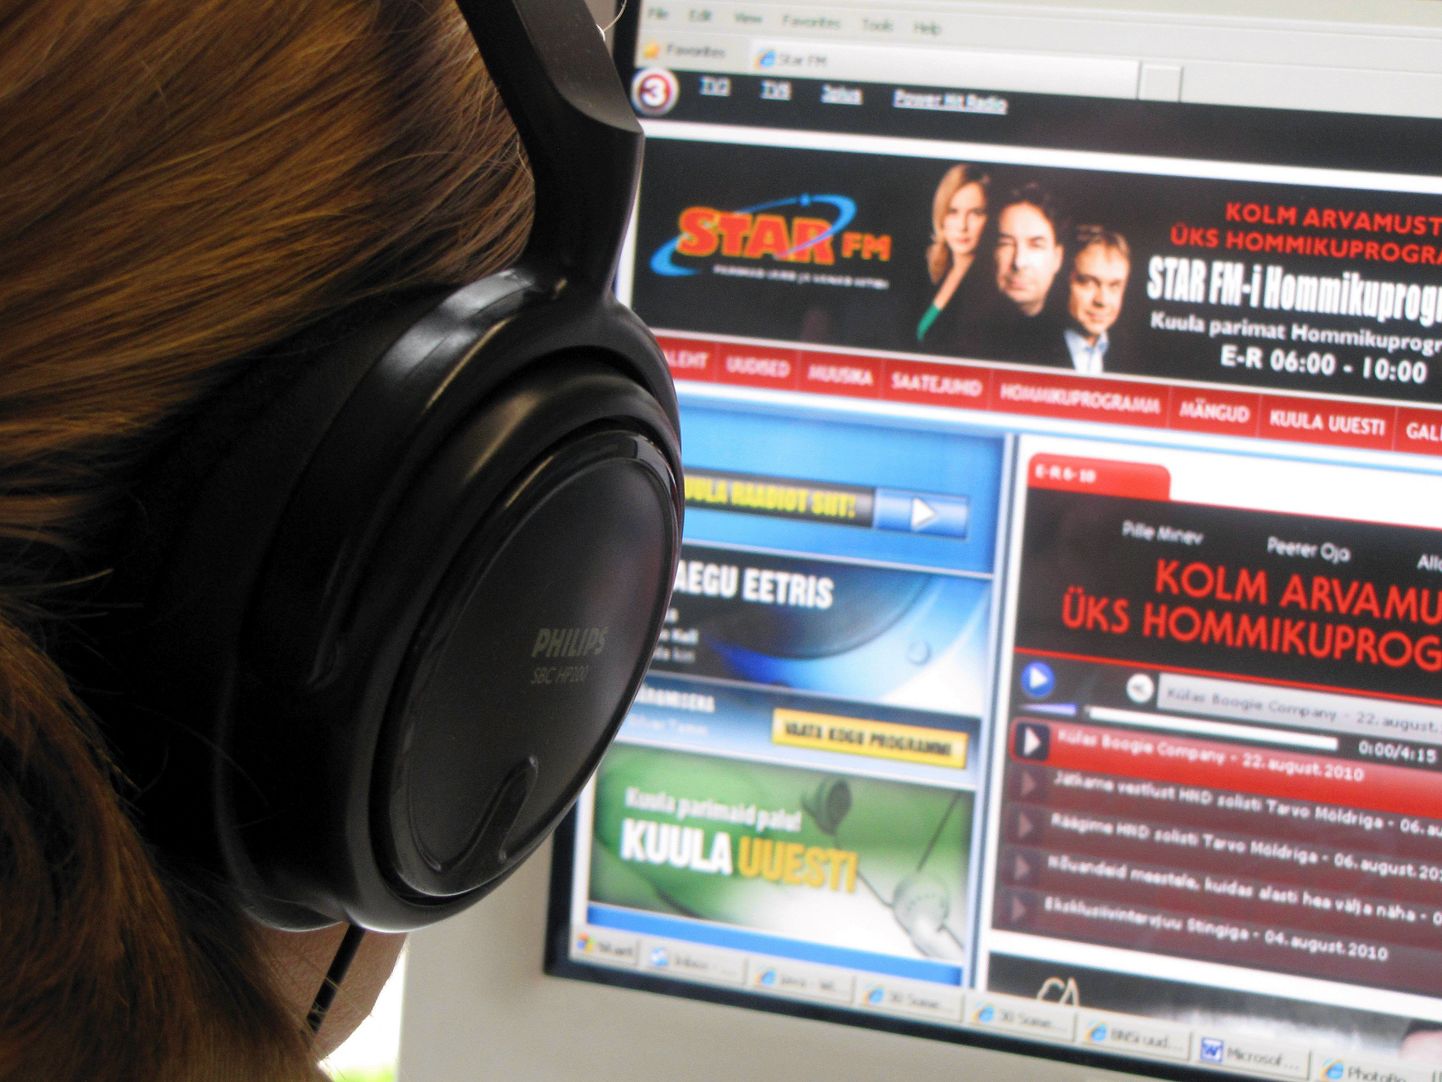 Seni on viljandlased saanud Star FM-i programmi kuulata vaid raadio kodulehe kaudu internetist.